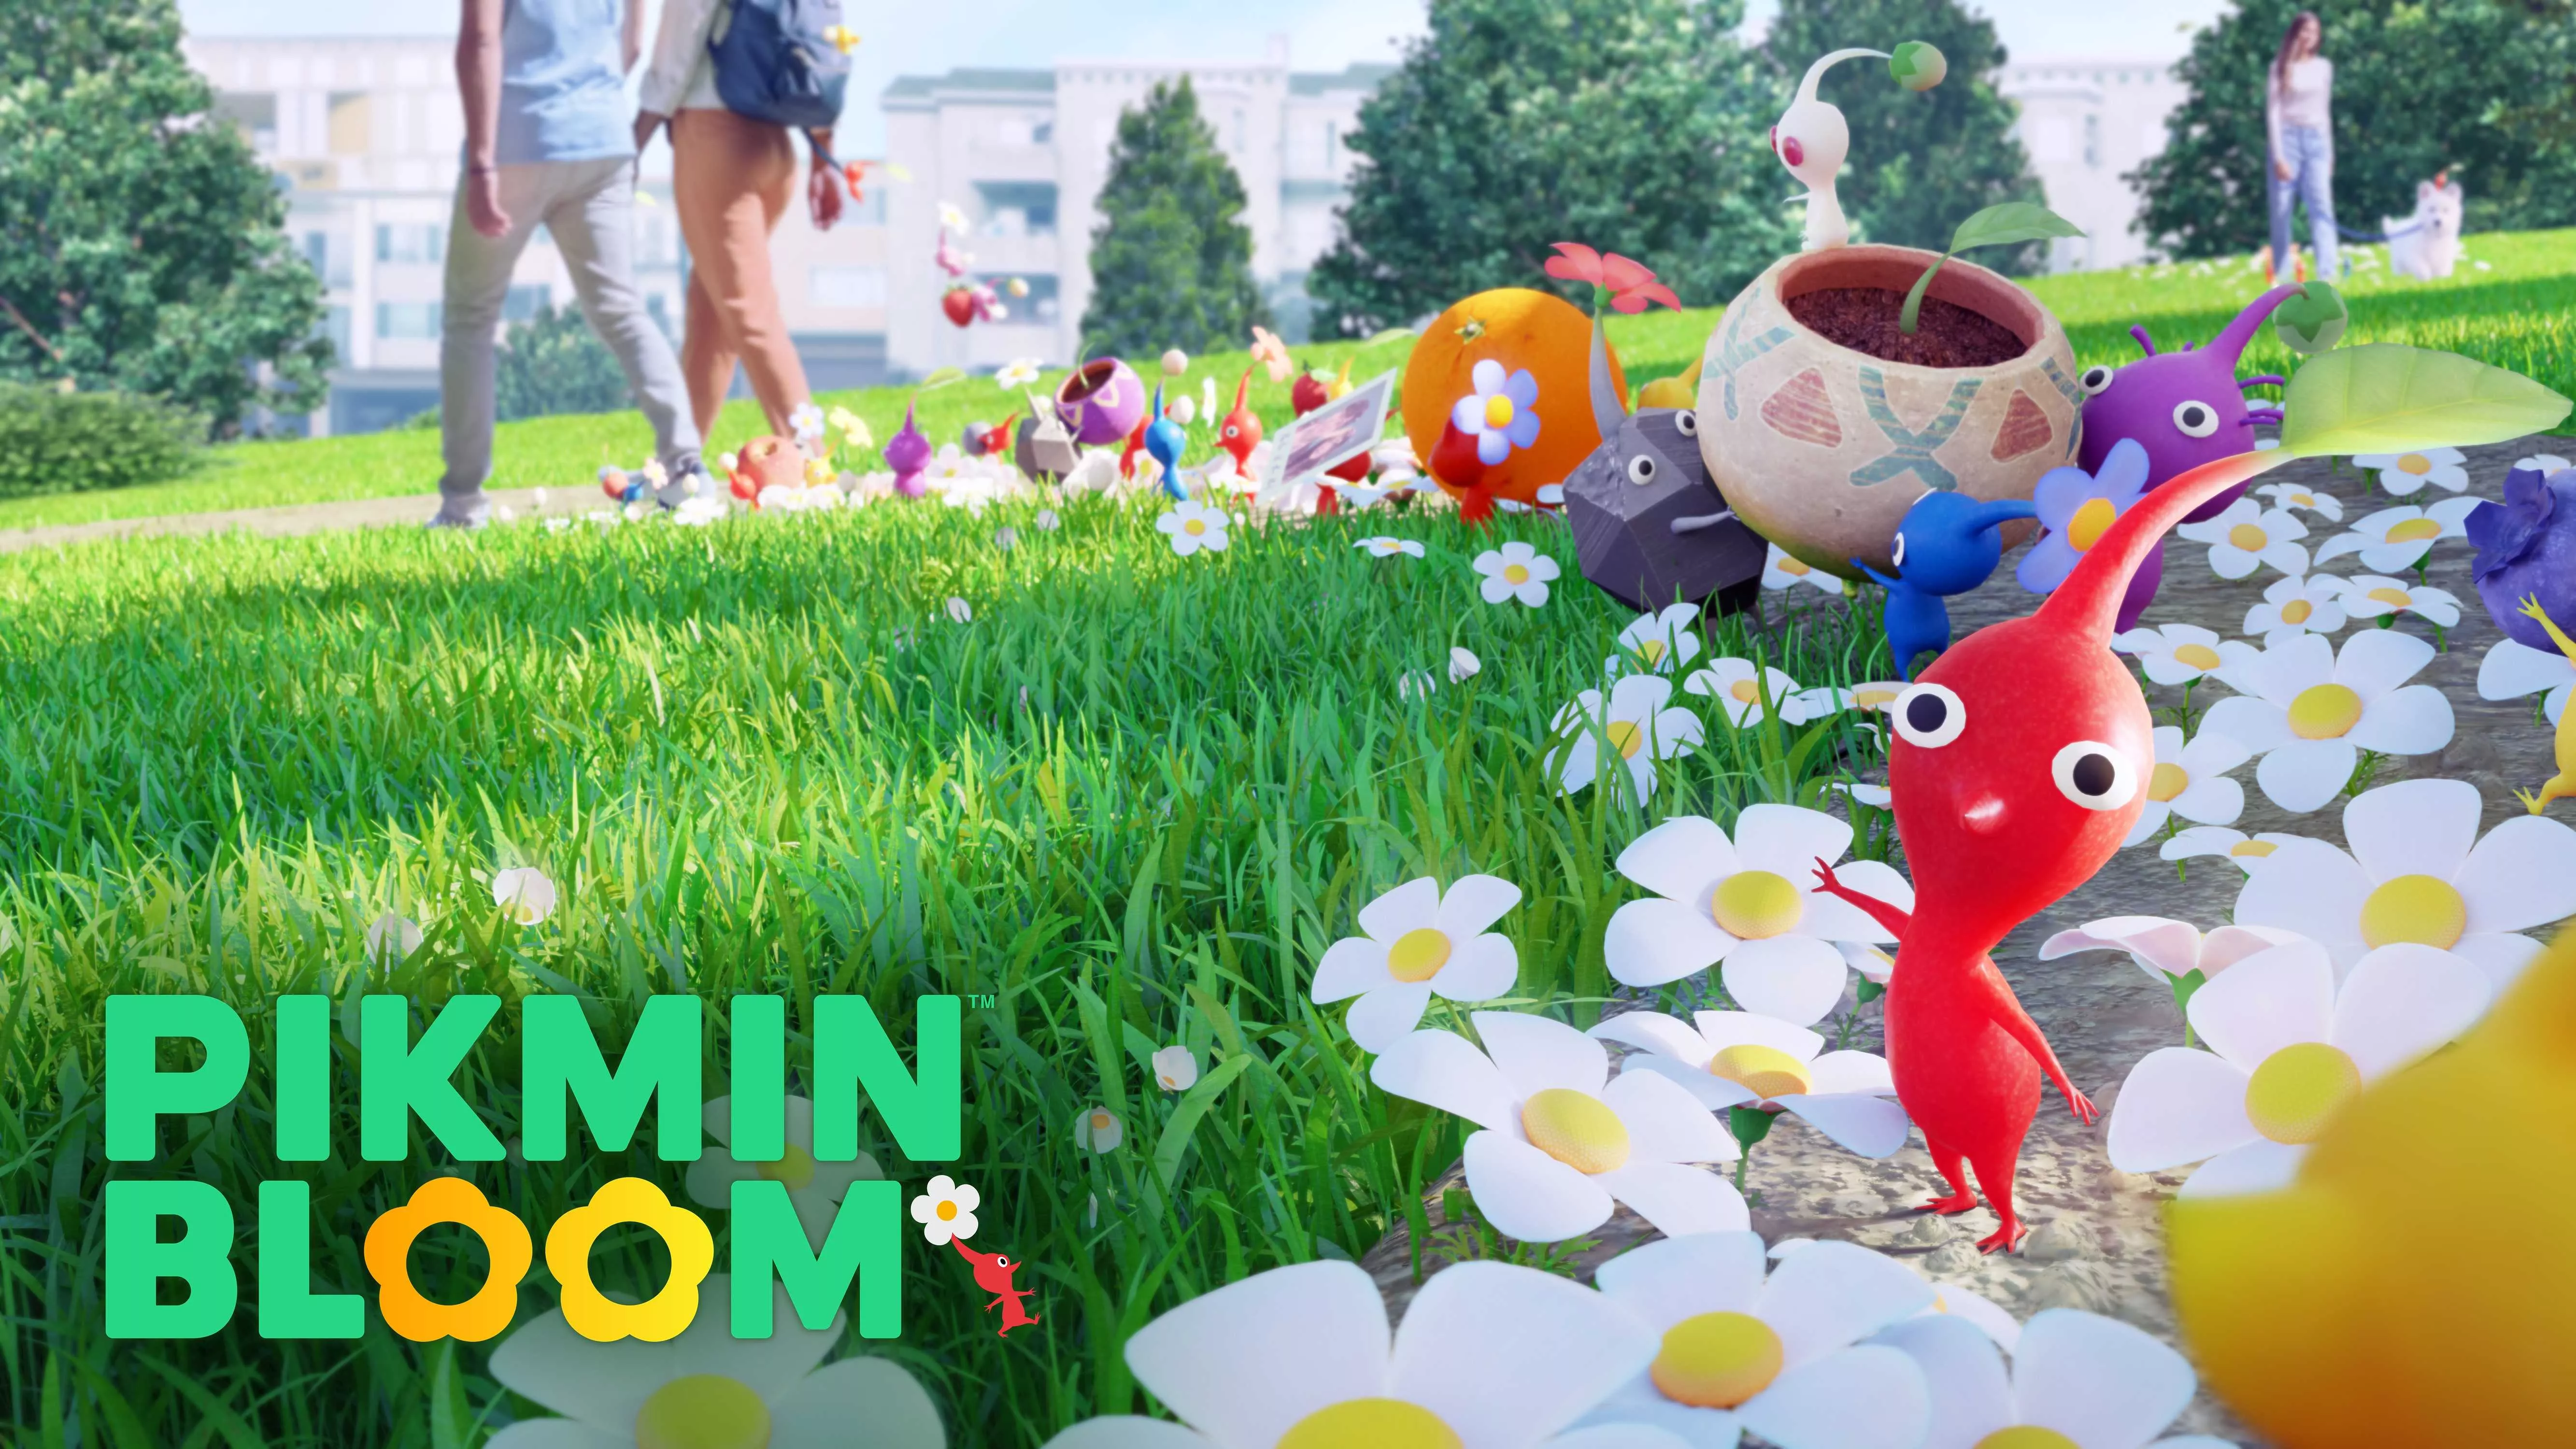 Pikmin Bloom soll zum Spazieren gehen animieren Heropic